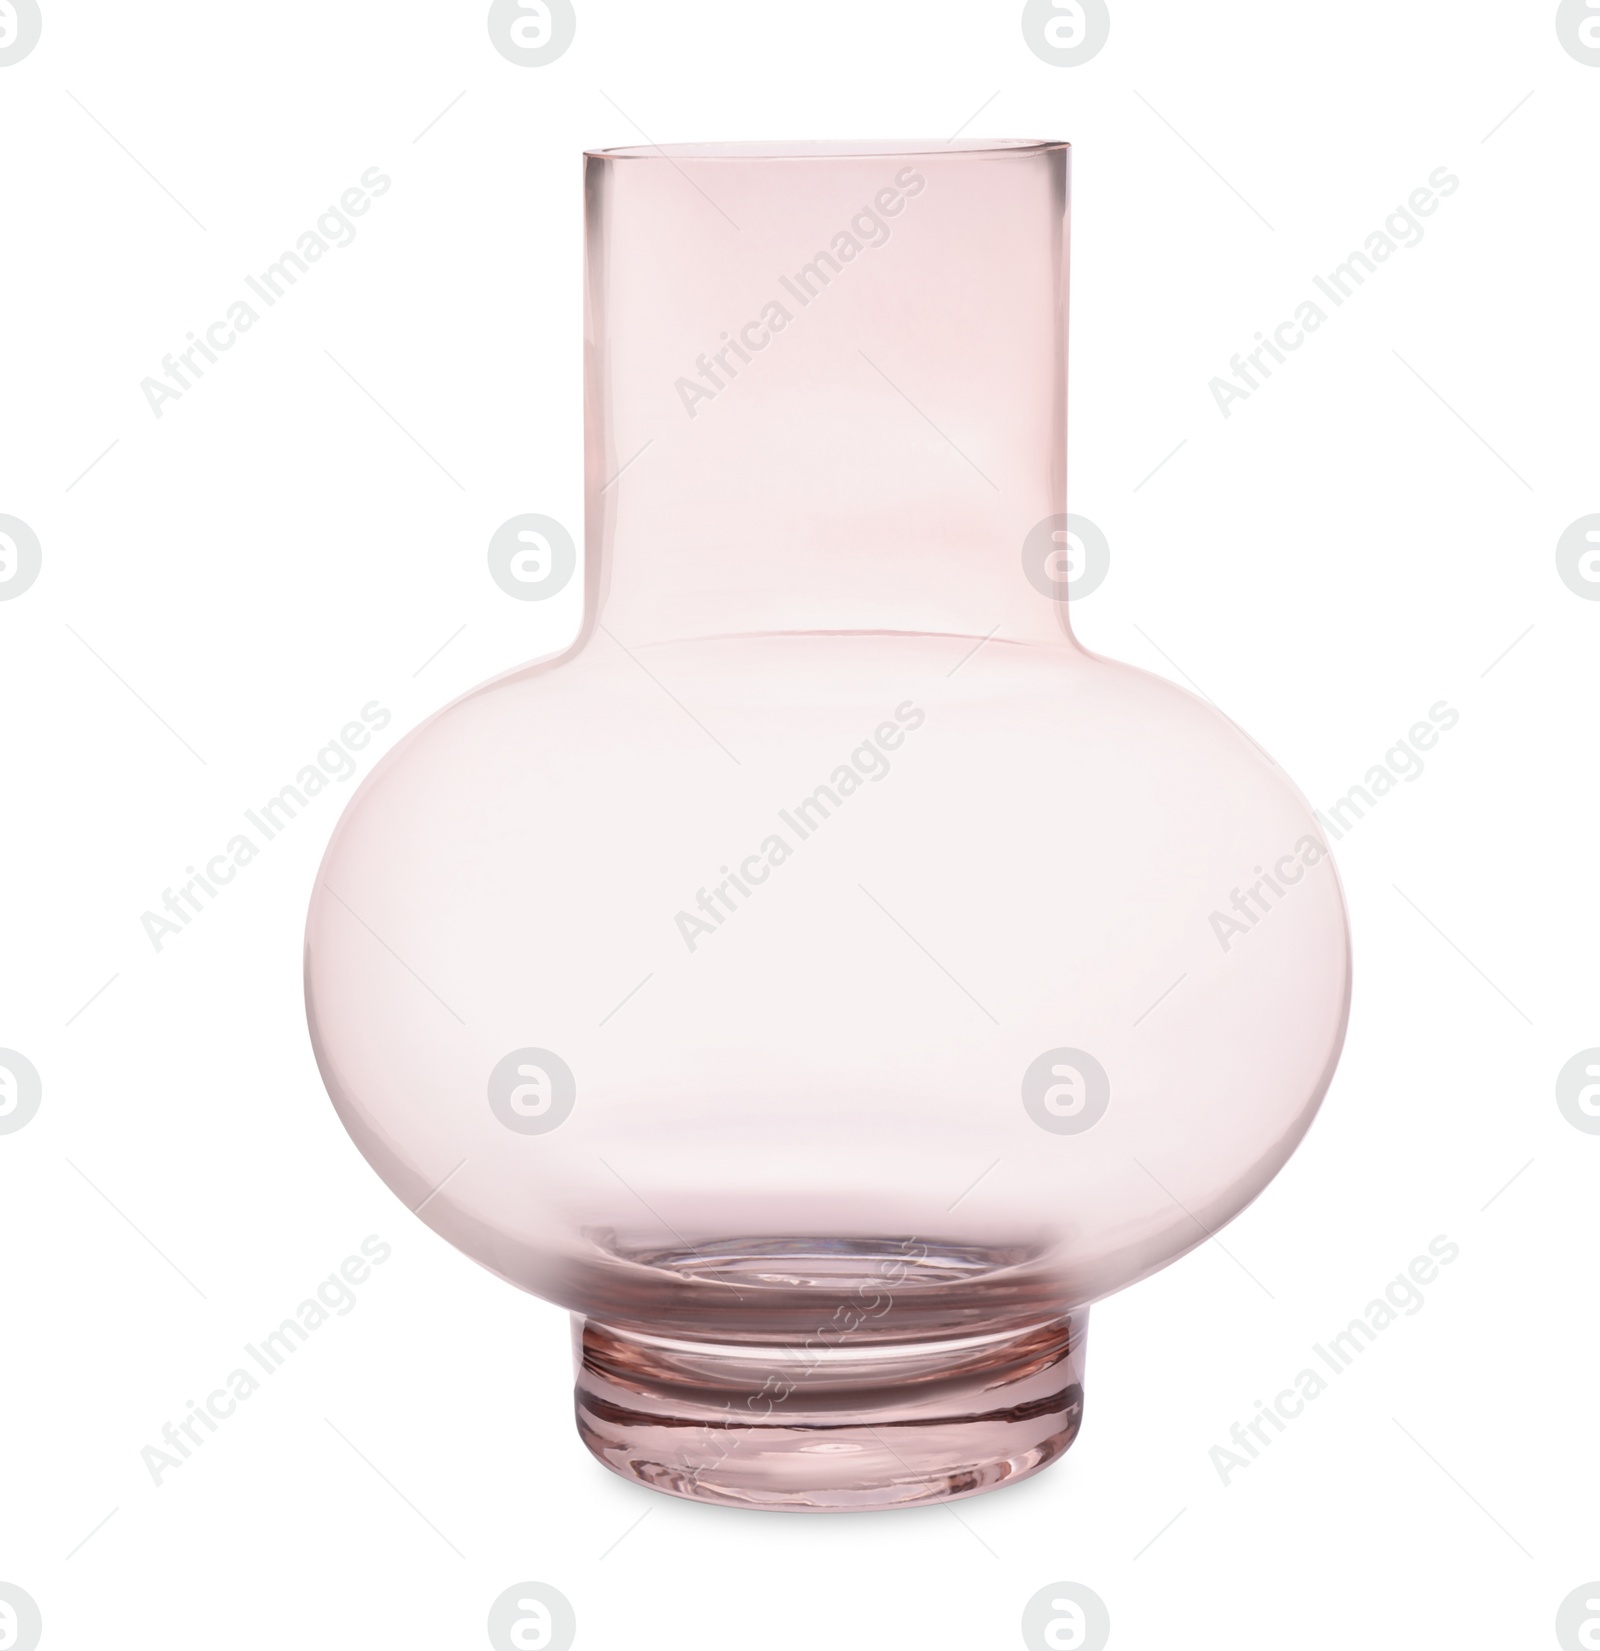 Photo of Stylish empty glass vase isolated on white